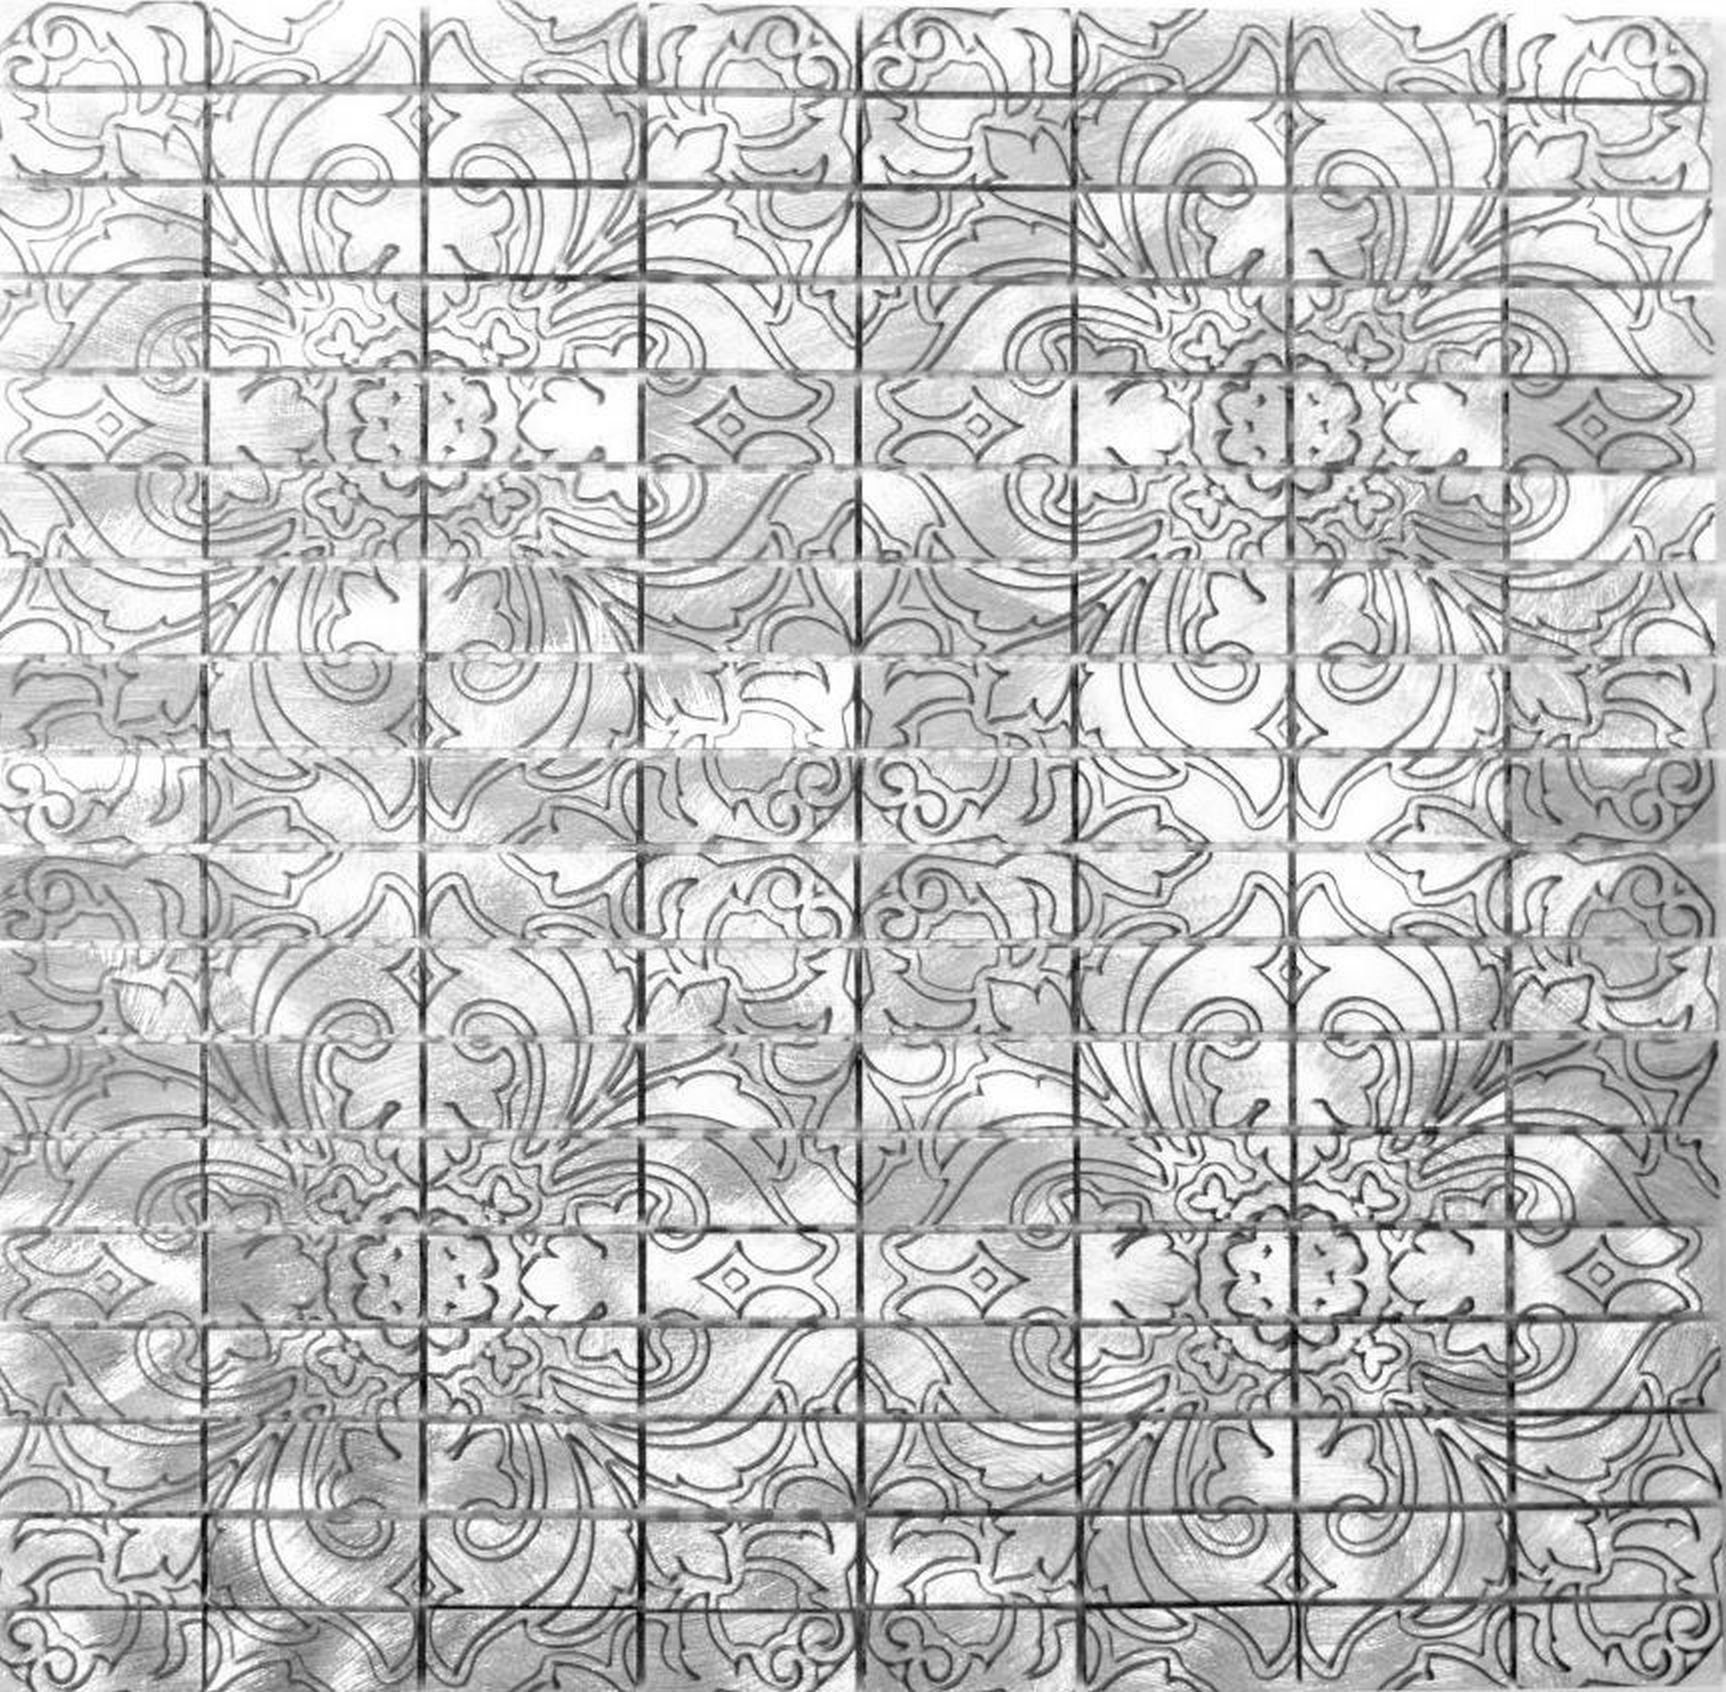 Mosani Mosaikfliesen Mosaik Fliese Aluminium silber Fliesenspiegel Küchenrückwand